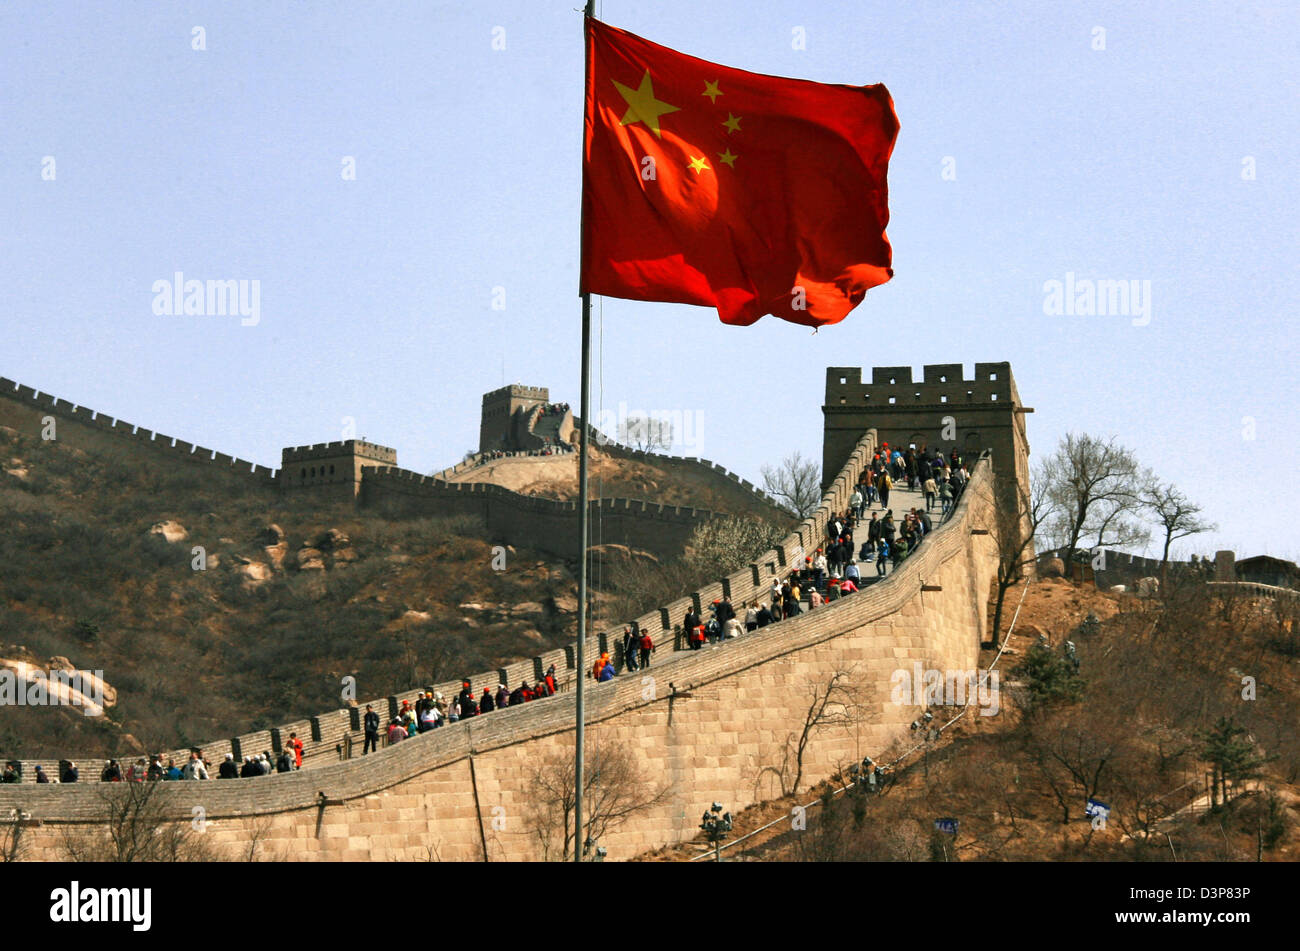 (Afp) Le drapeau national de Chine vagues au-dessus de la Grande Muraille près de la capitale Beijing, Chine, le mardi 11 avril 2006. La Grande Muraille de Chine est la plus longue structure de l'homme, qui s'étend sur une distance de 6 000 kilomètres. La construction a commencé au cours de l'Qin-Dynasty (3e siècle avant J.-C.) et s'est poursuivie pendant une période de plusieurs siècles. La Chine est le pays le plus peuplé du monde Banque D'Images